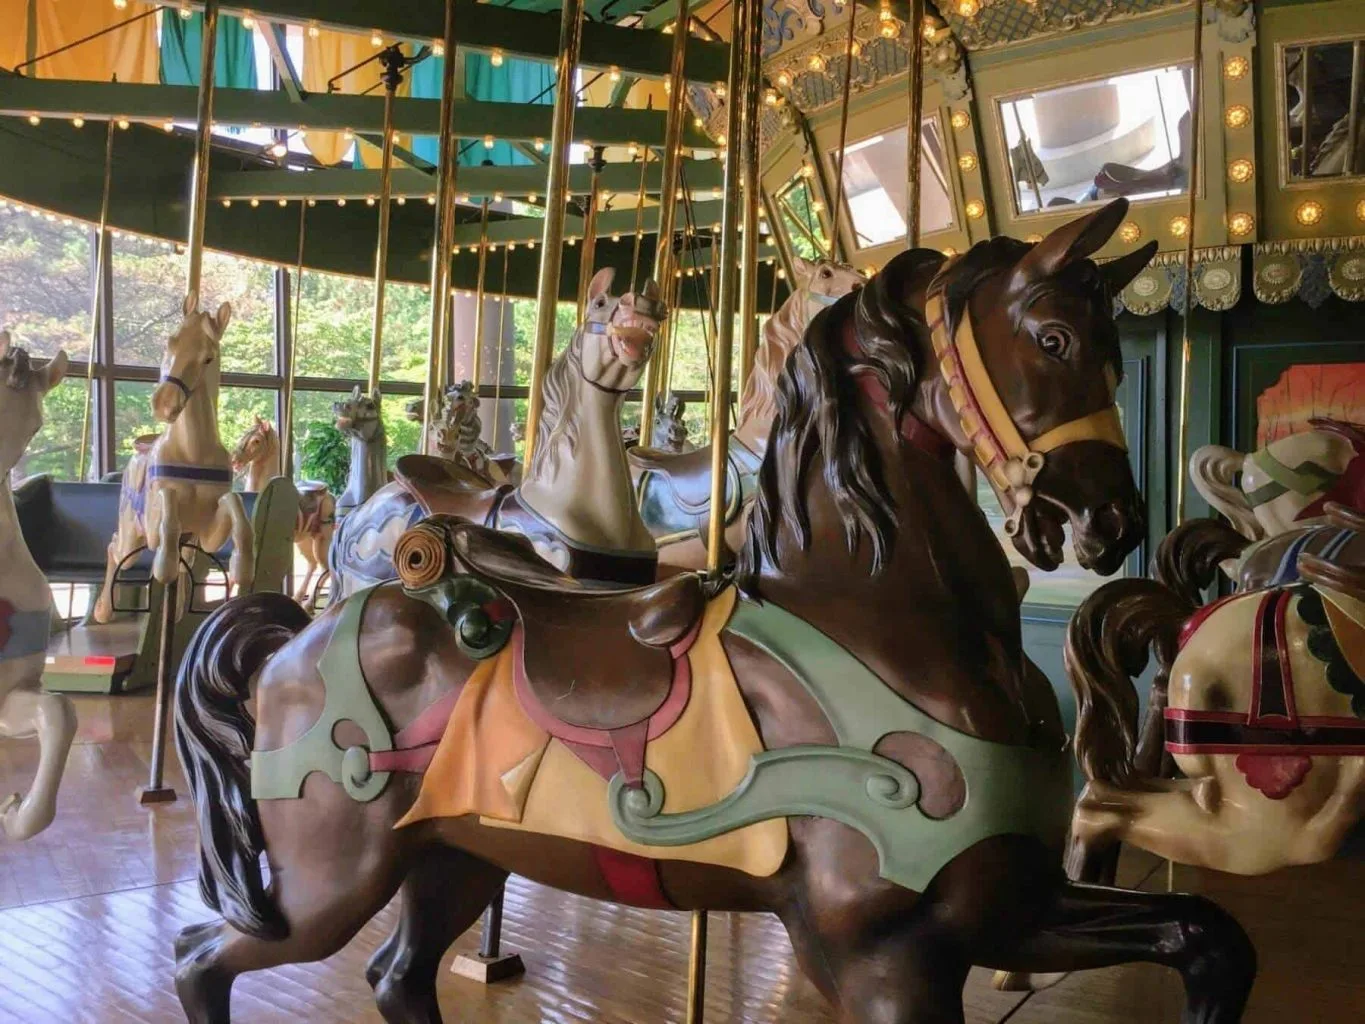 St. Louis Carousel, Faust Park